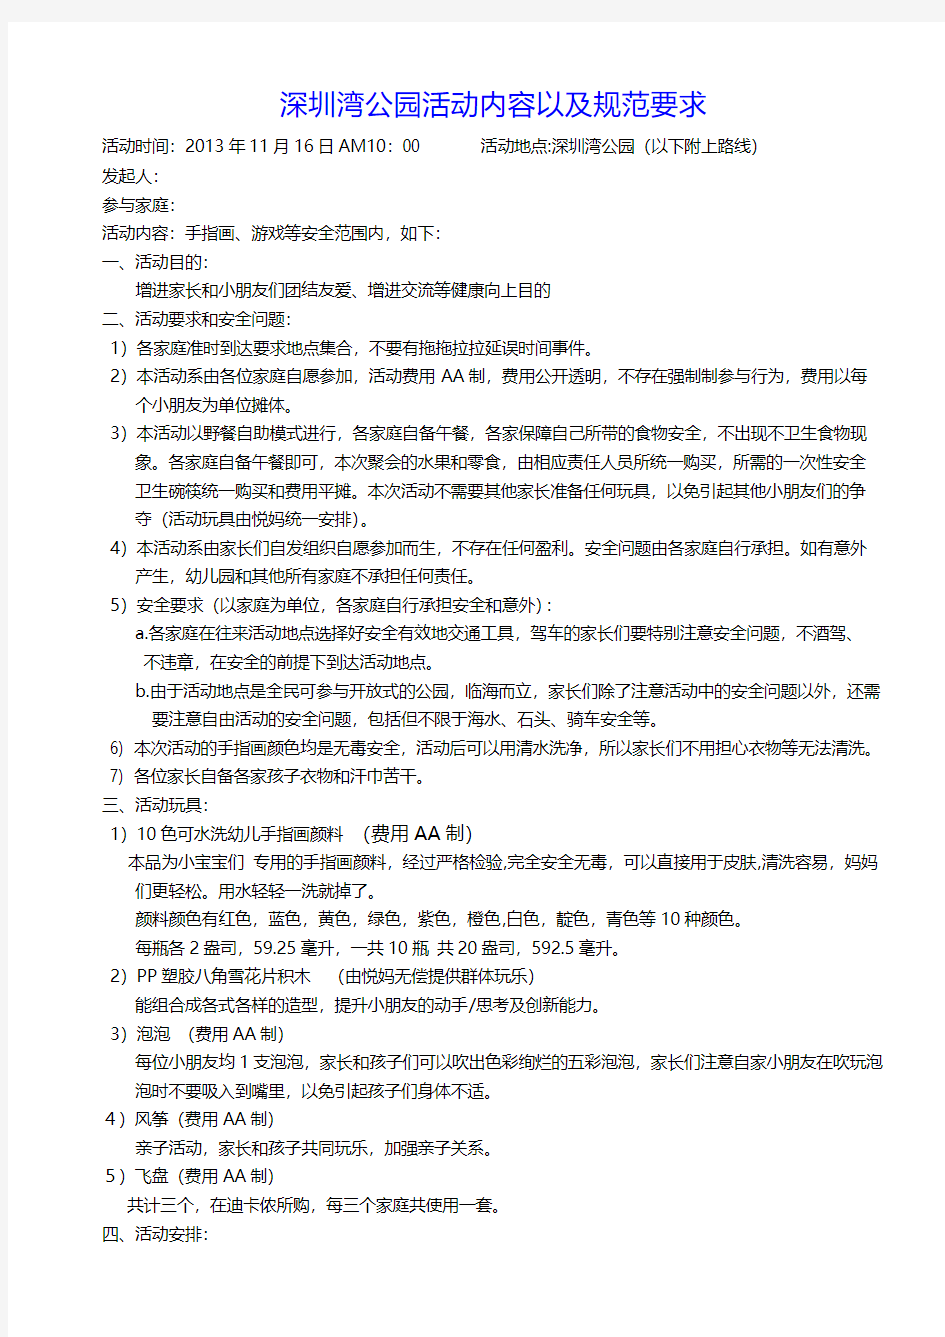 11.16深圳湾公园活动策划和规范要求